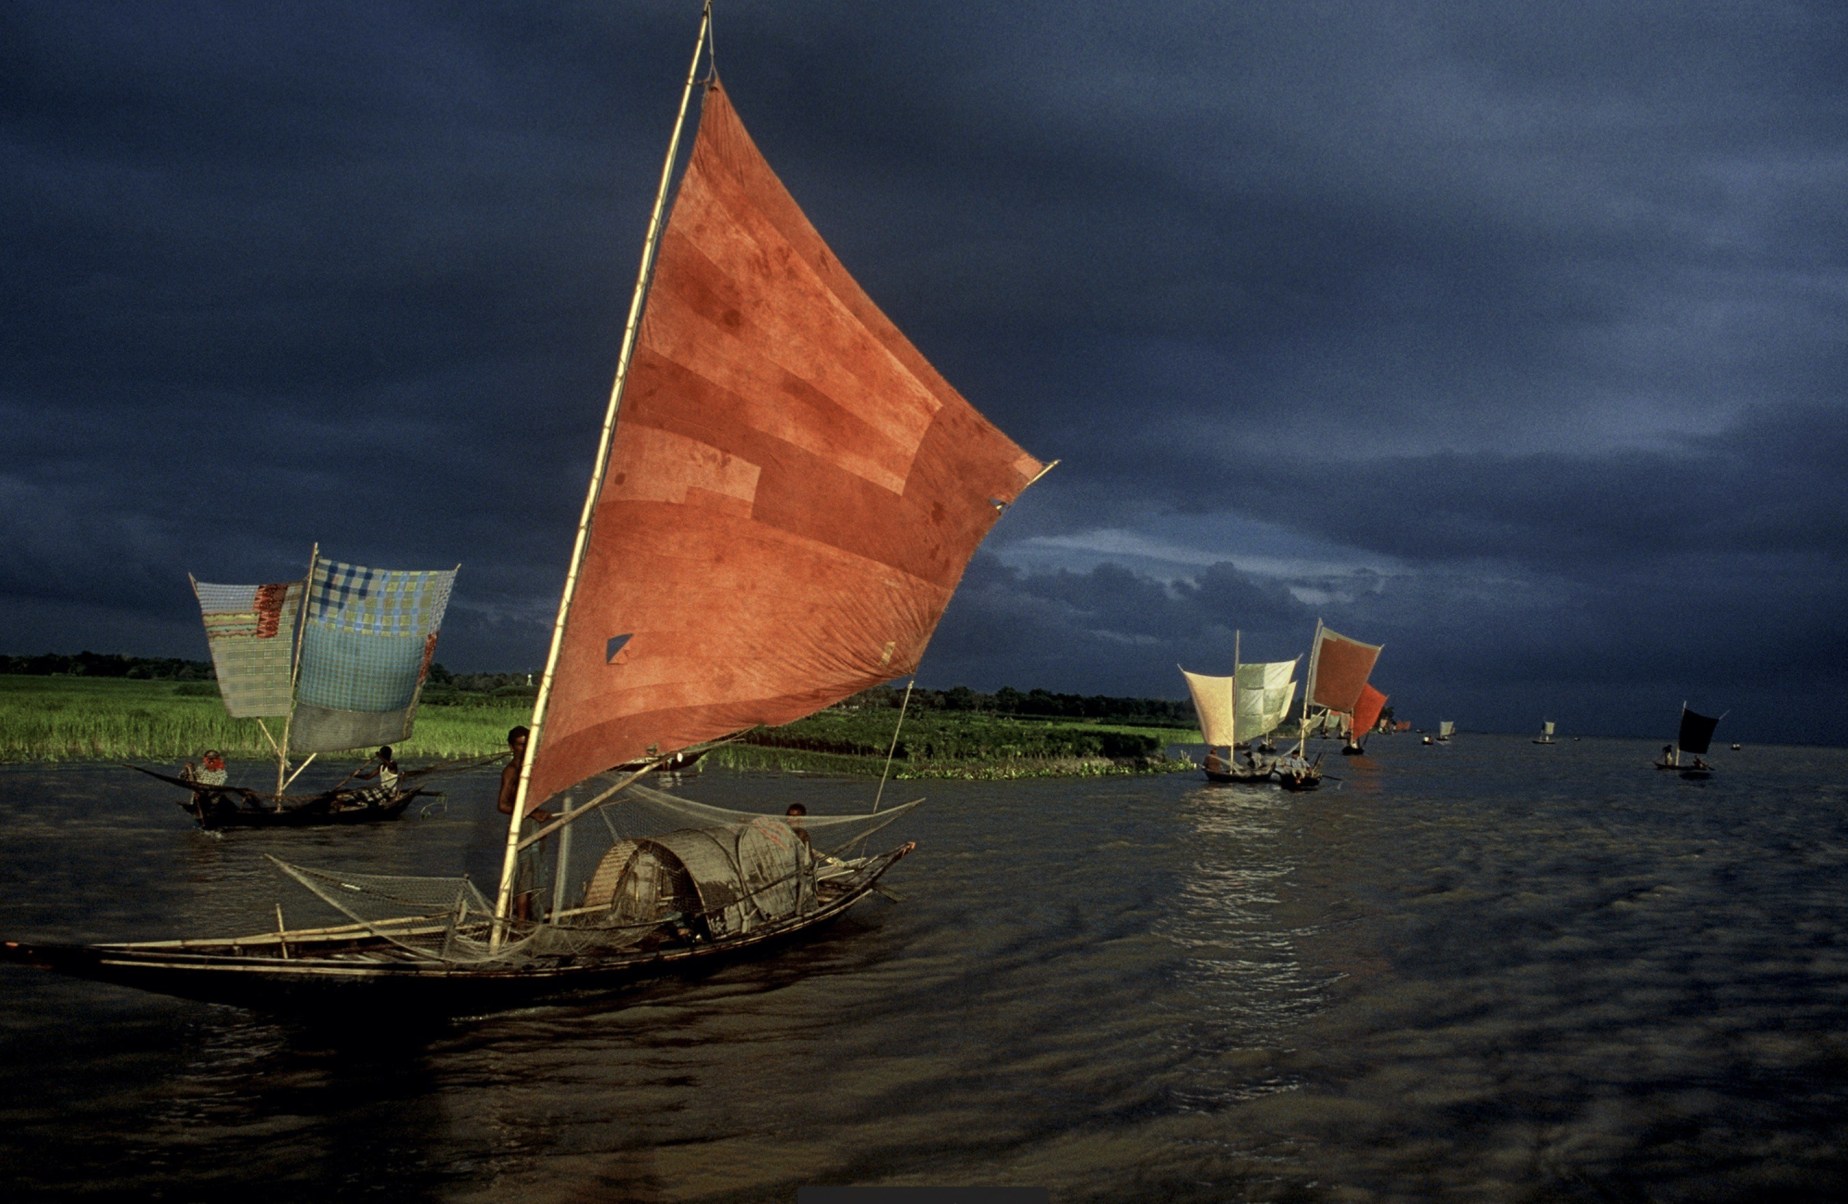 "Sailboat FishingforIlish; Daulatdia, Bangladesh" 2001.